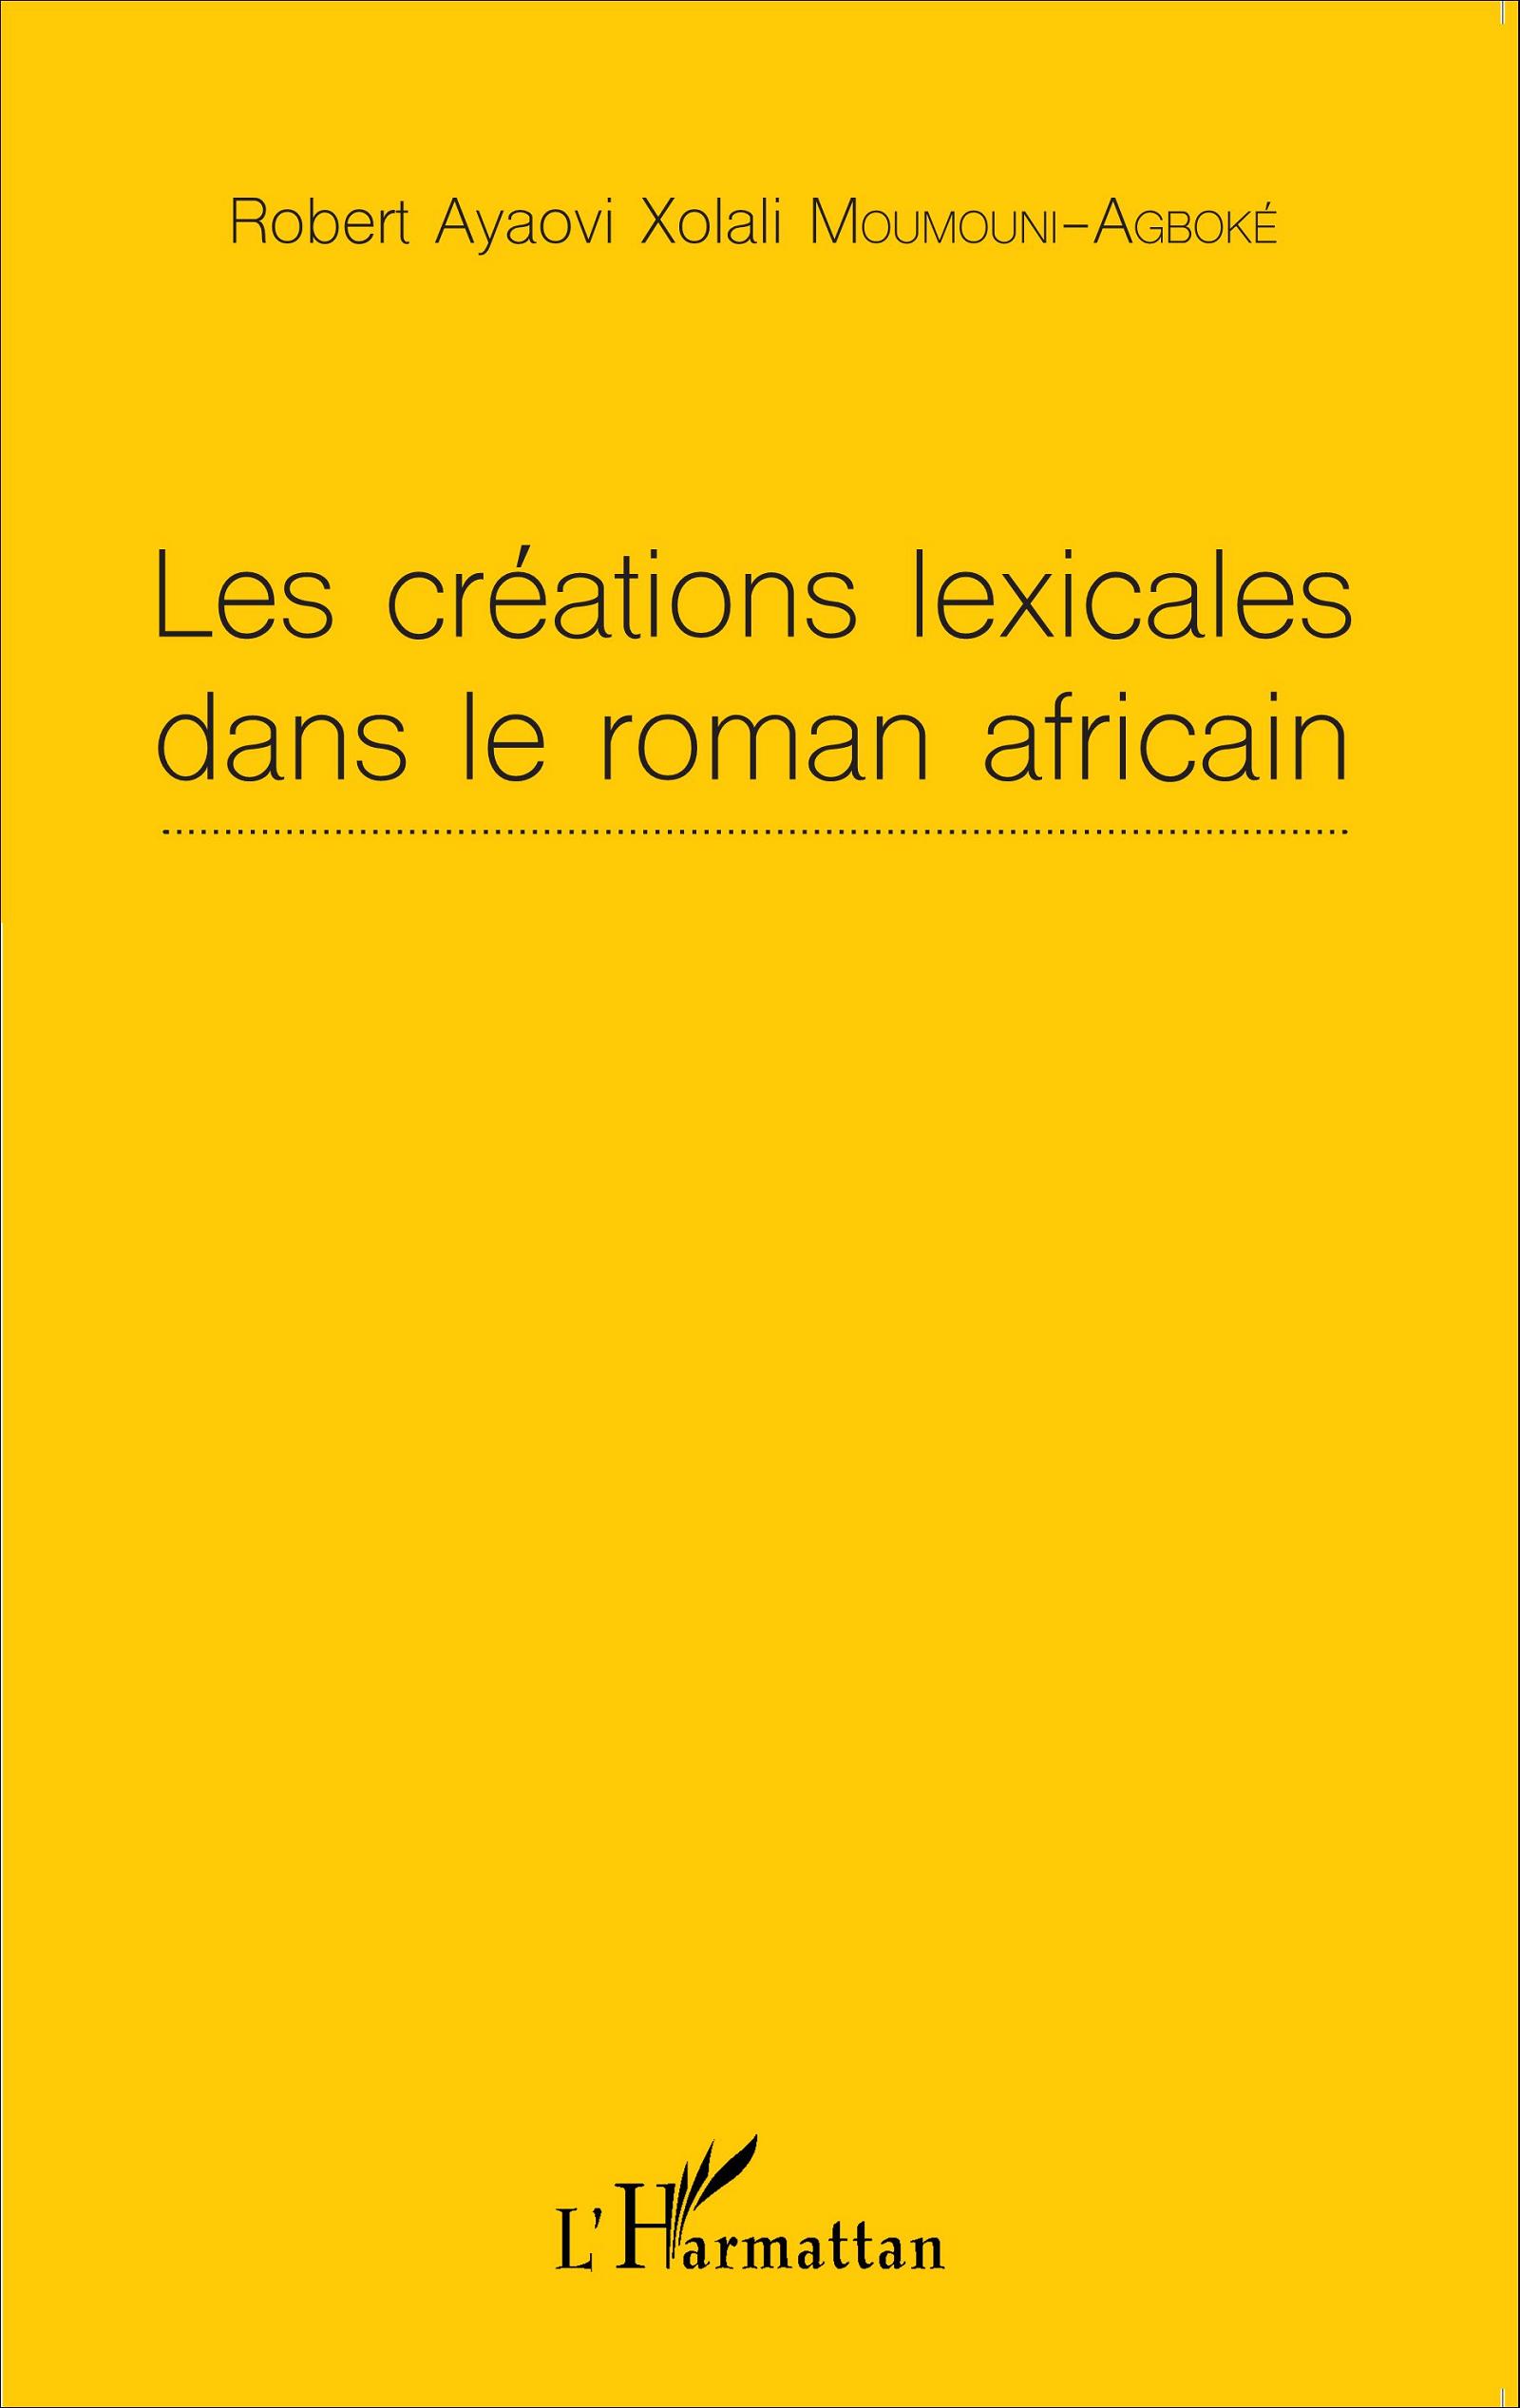 R. Ayaovi Xolali Moumouni-Agboké, Les Créations lexicales dans le roman africain